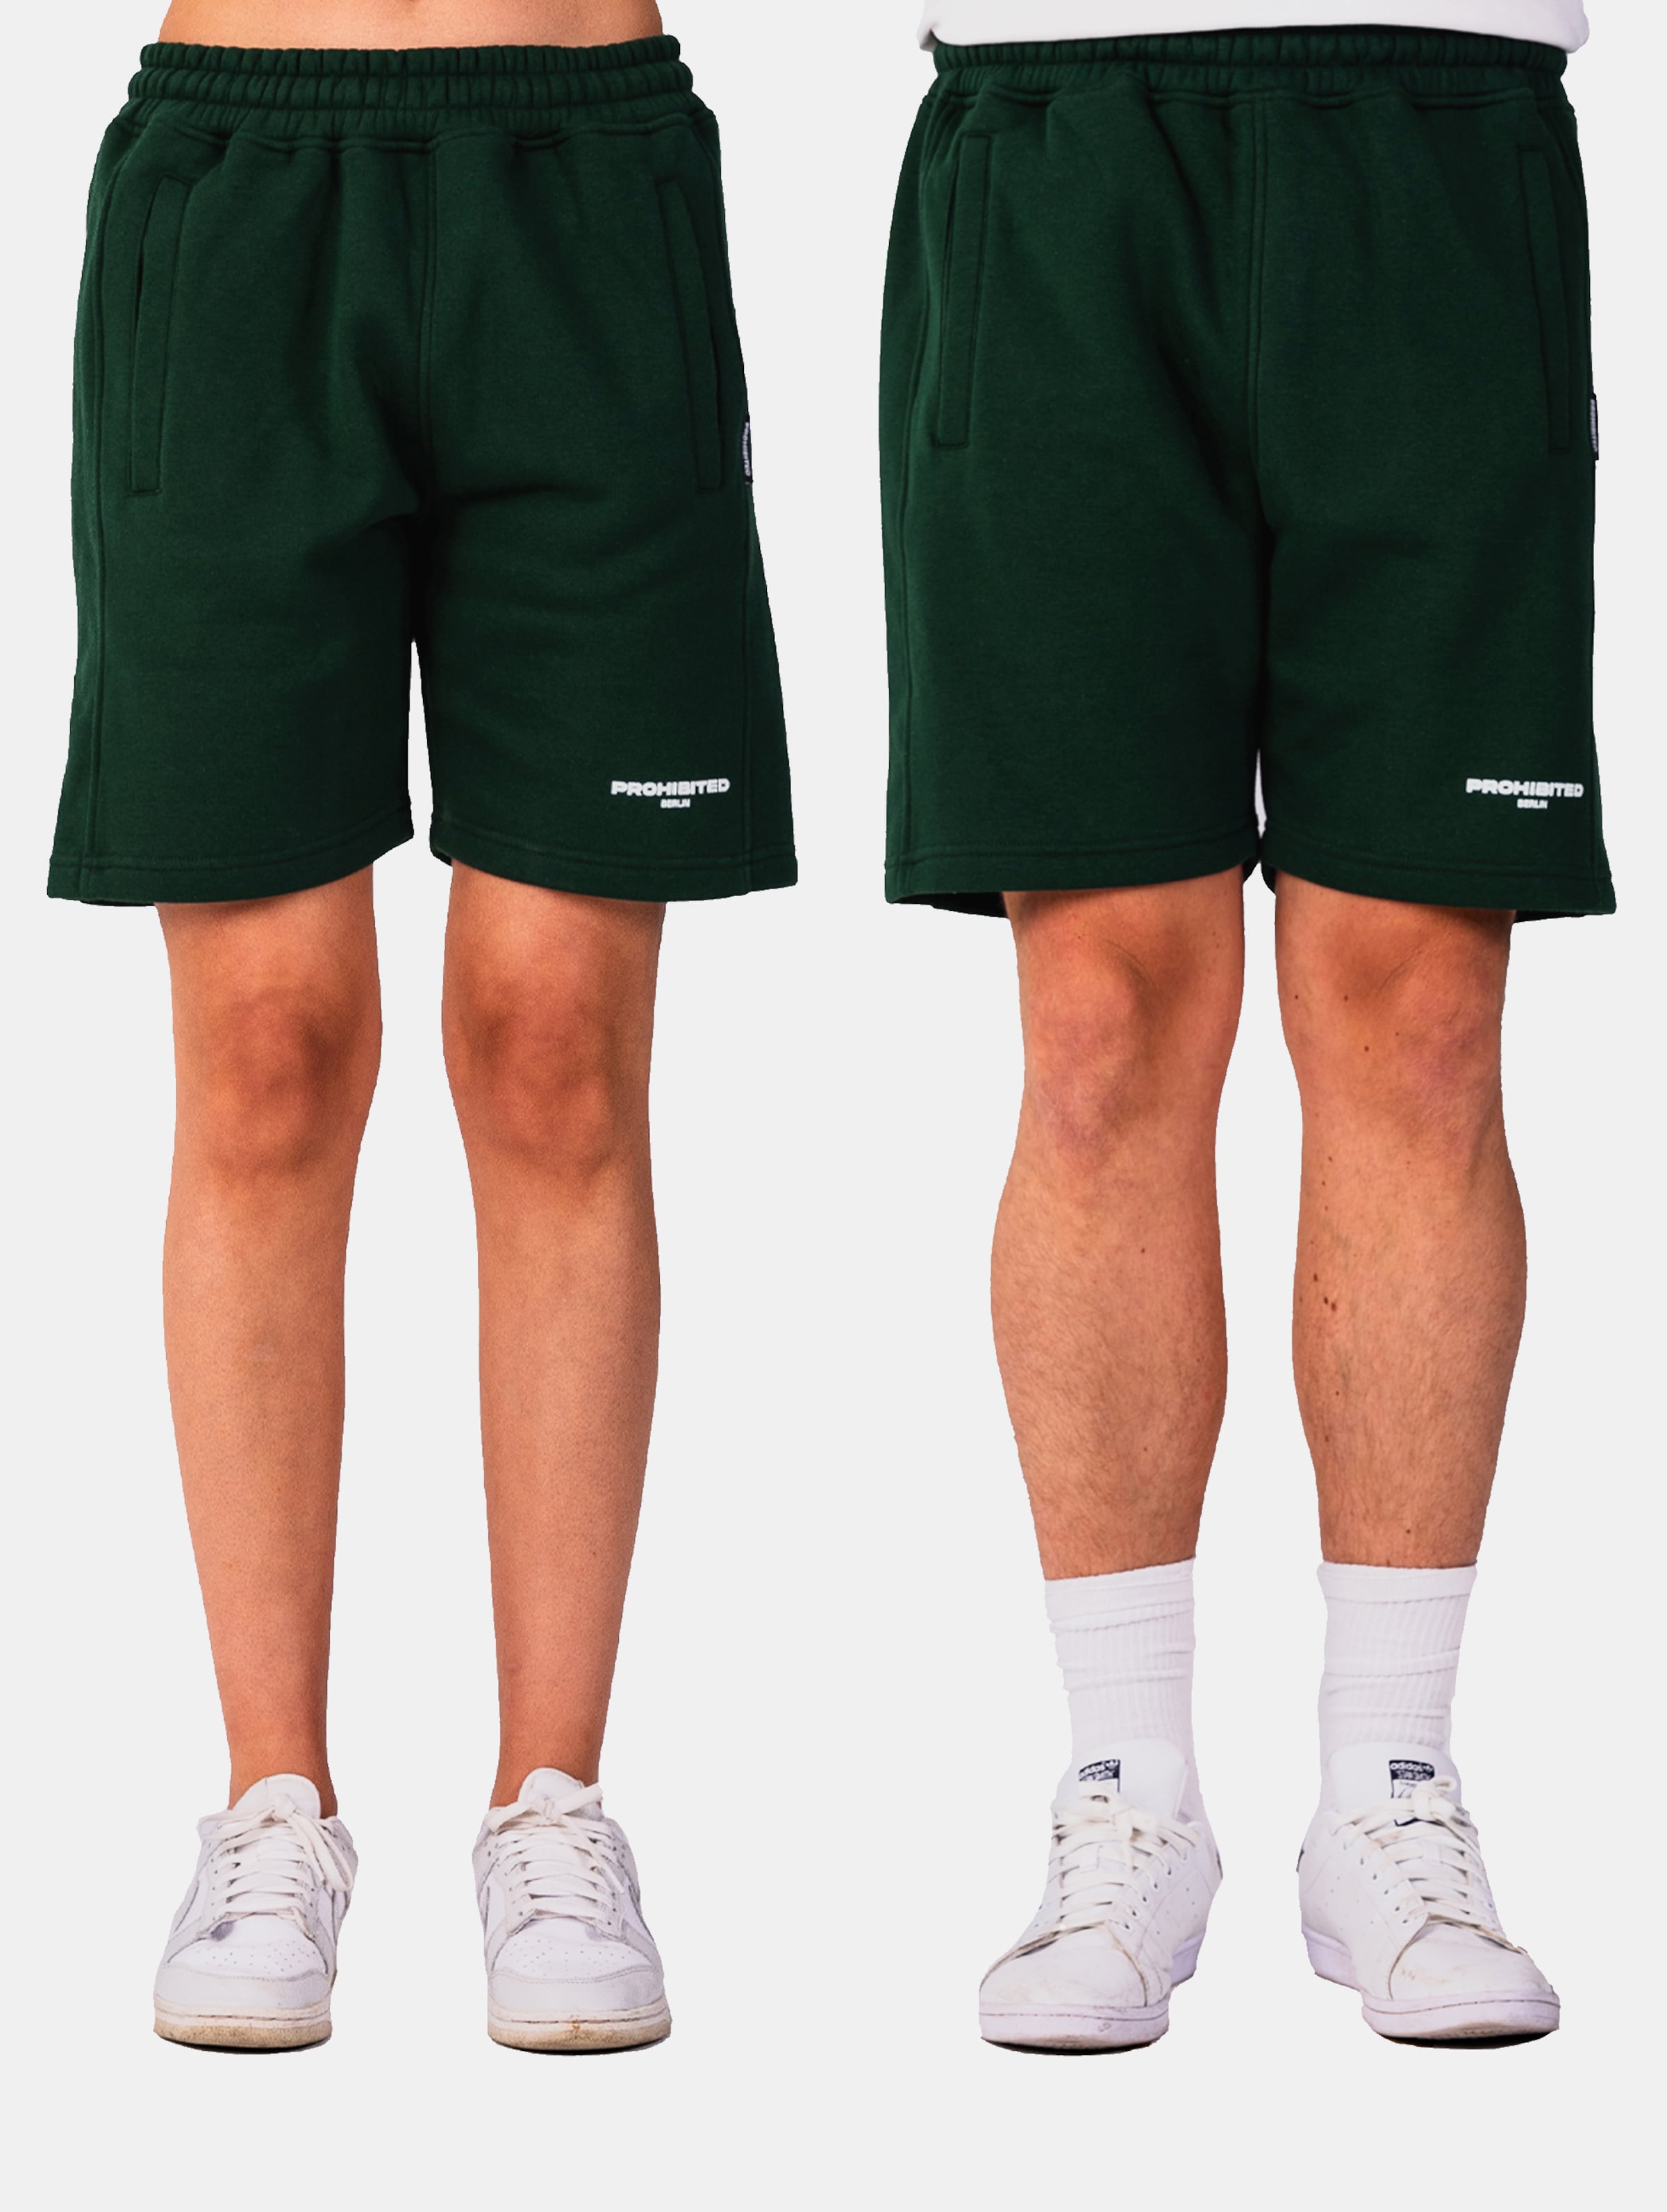 Prohibited Shorts Frauen,Männer,Unisex op kleur groen, Maat XL